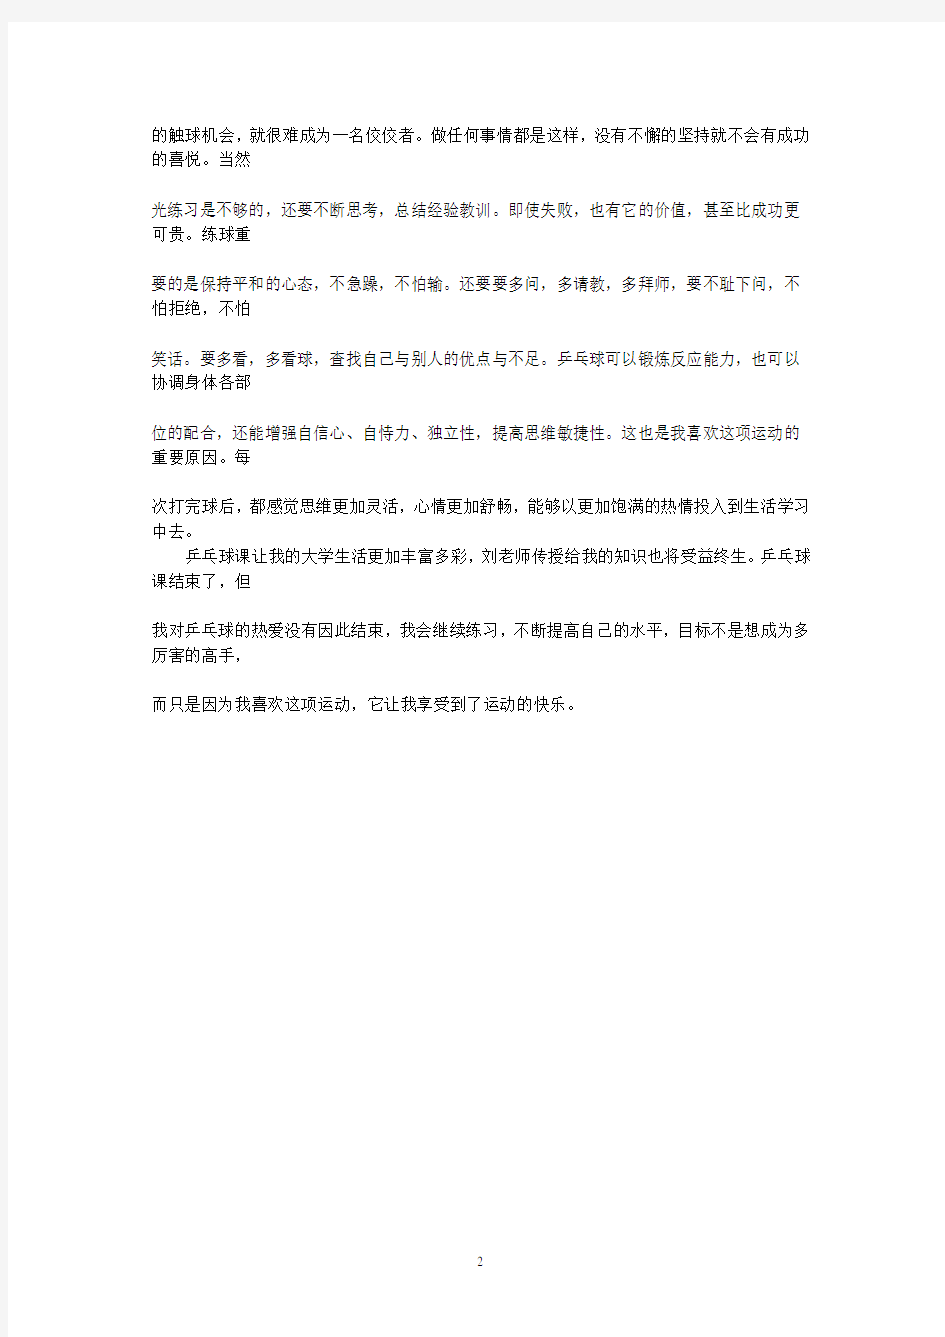 学习乒乓球的心得体会(2020年整理).pdf